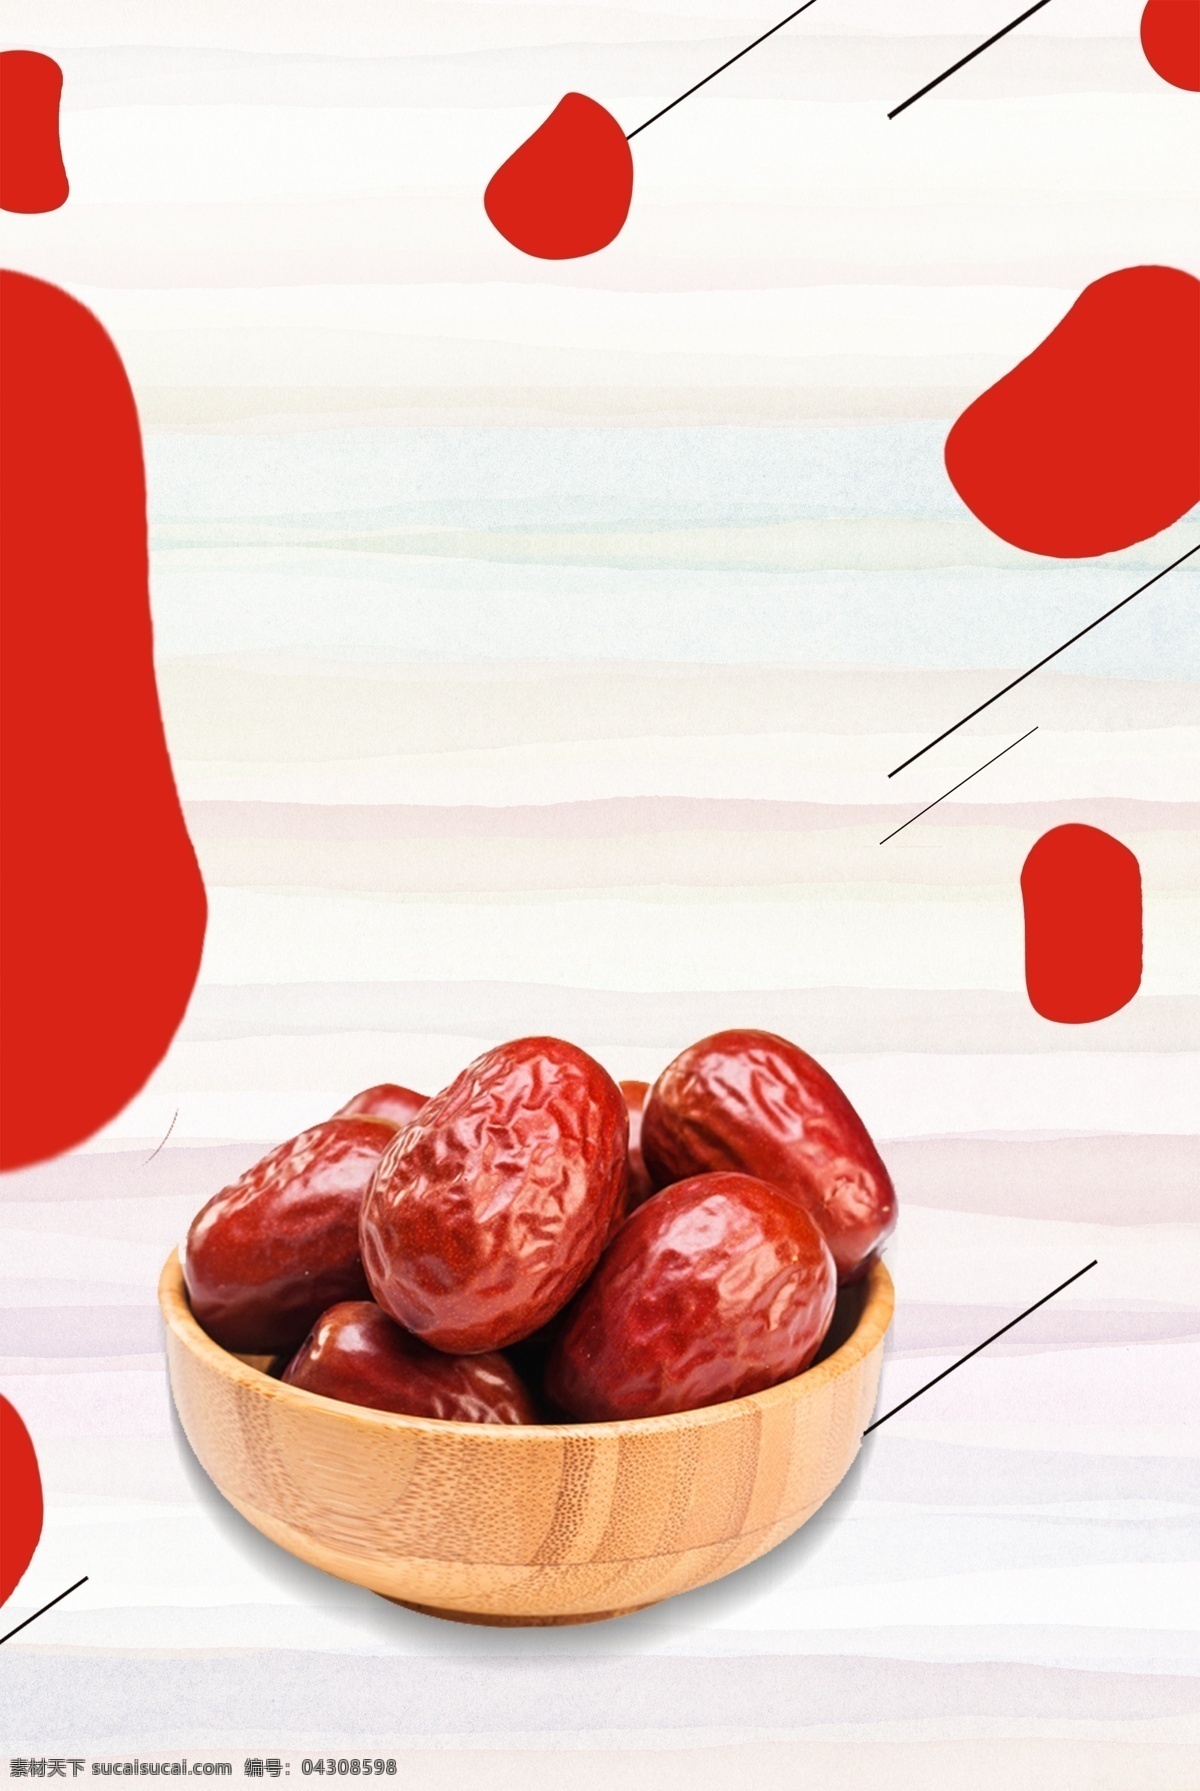 水果 豆子 美食 广告 背景 红枣 养身 食品 食物 电商 淘宝背景 广告背景